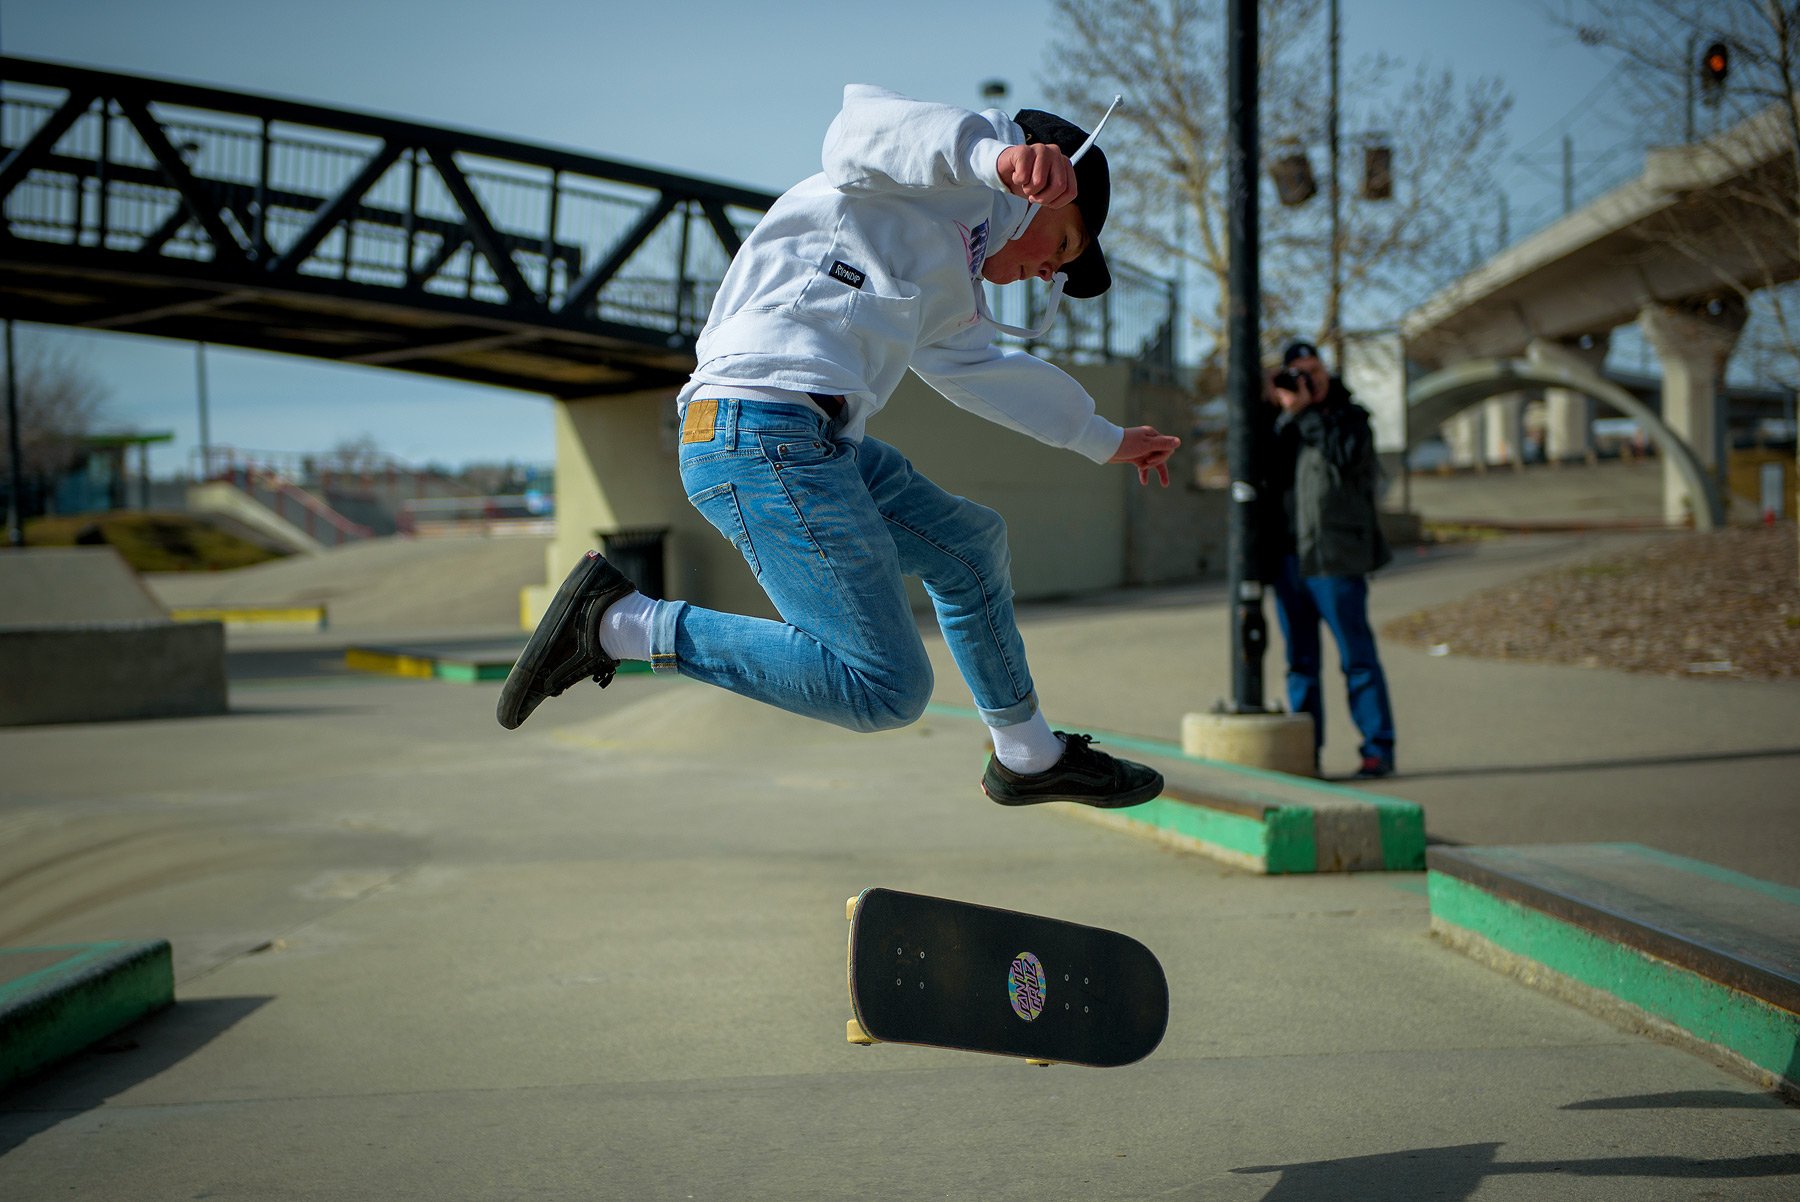 Skateboader2.jpg